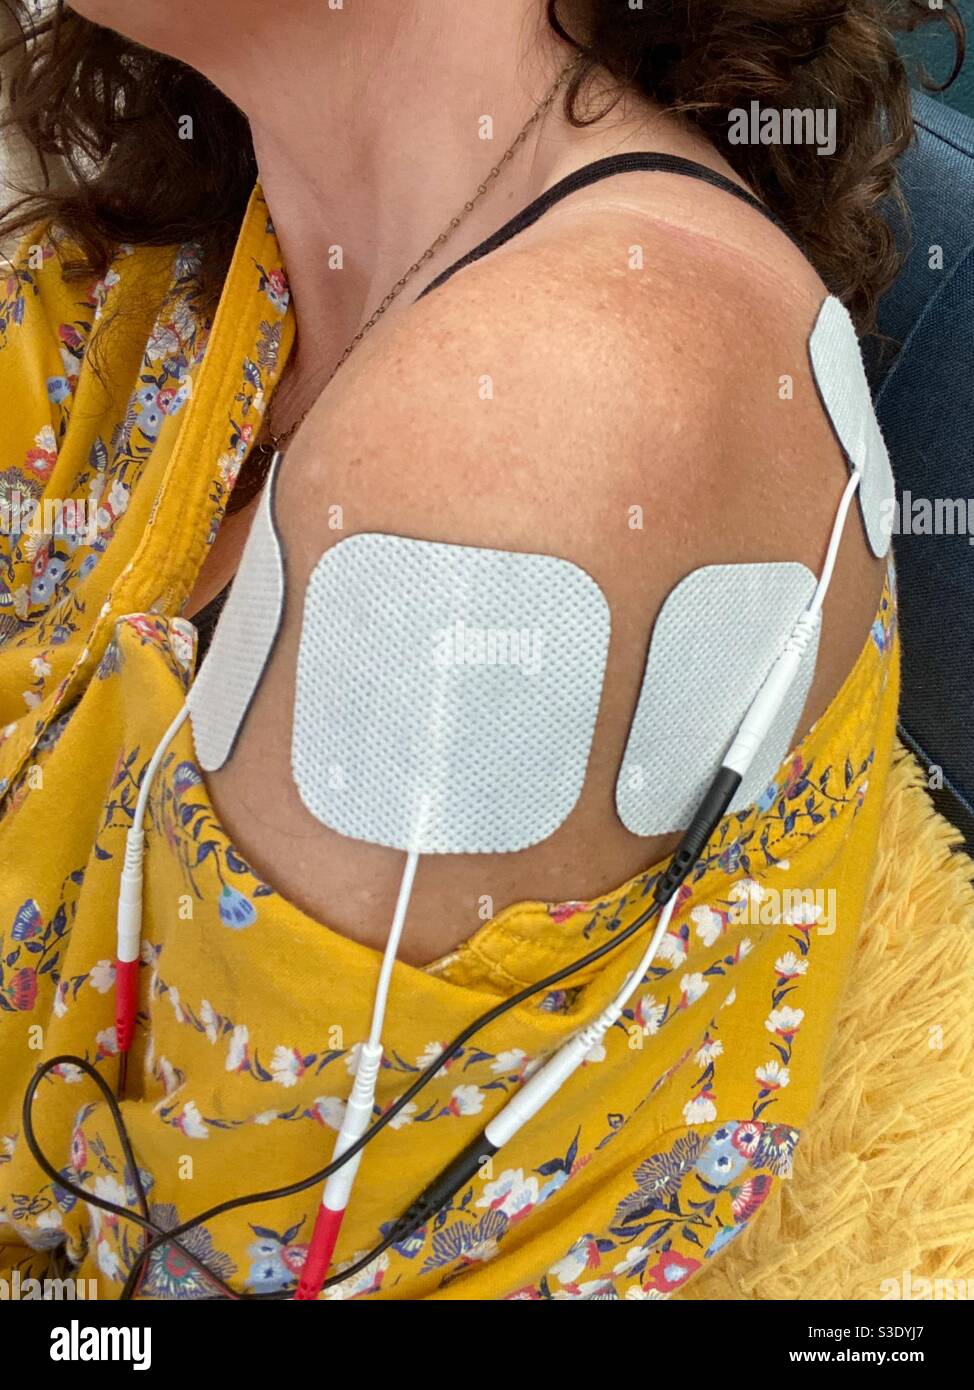 Eine Frau, die transkutane elektrische Nervenstimulation bei einer Schulterverletzung verwendet. Stockfoto